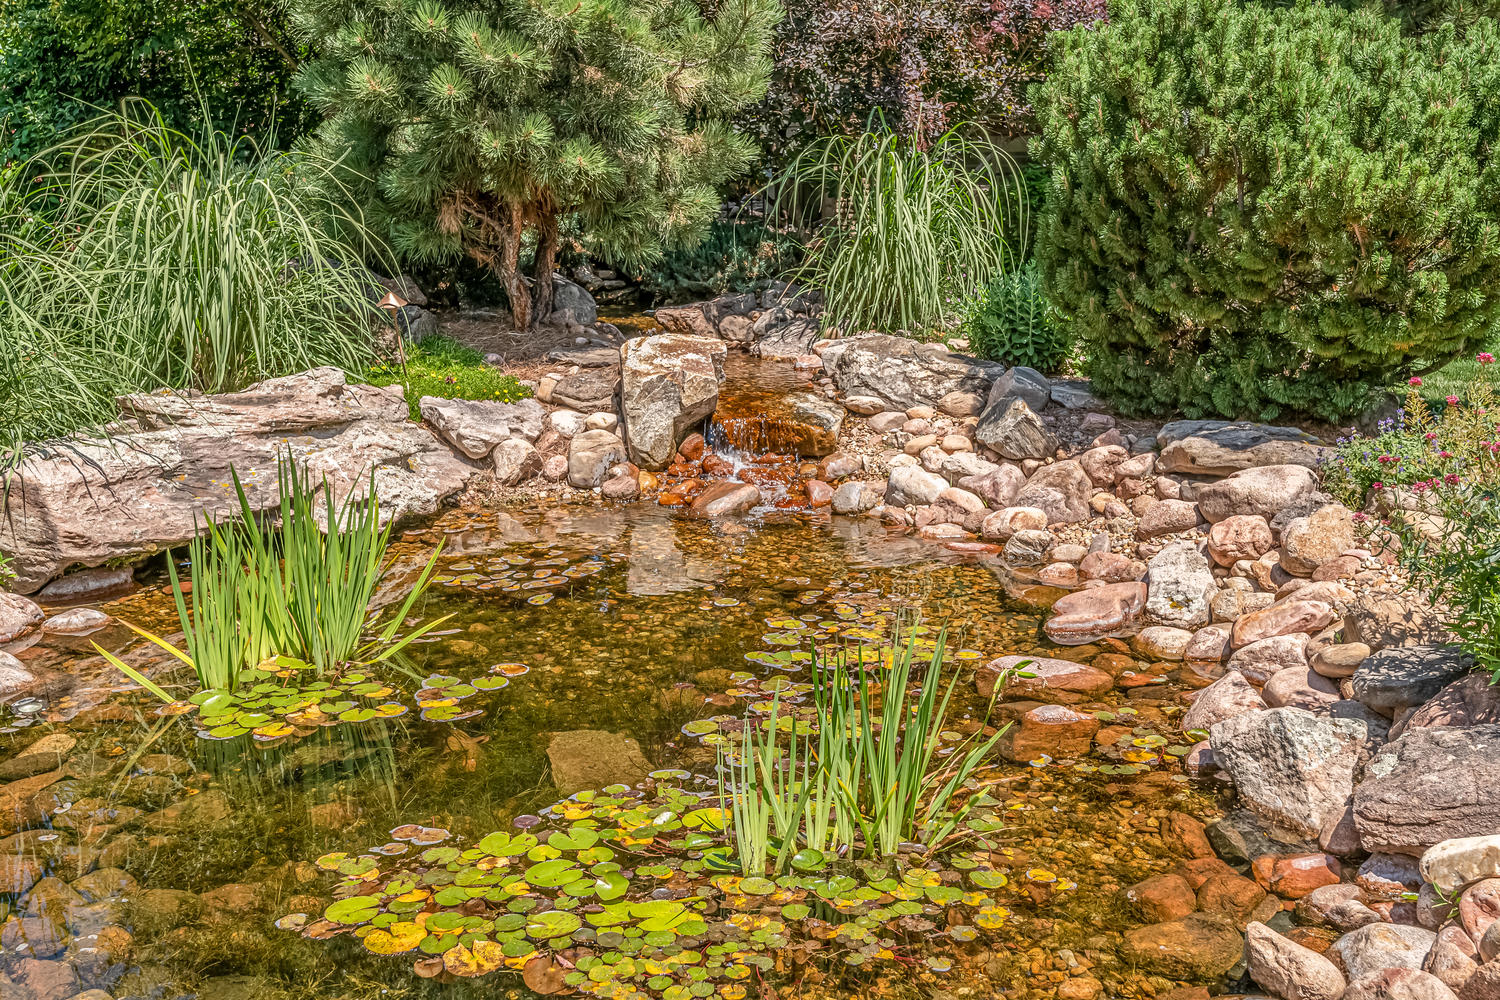 Your Minature Monet's Garden Pond